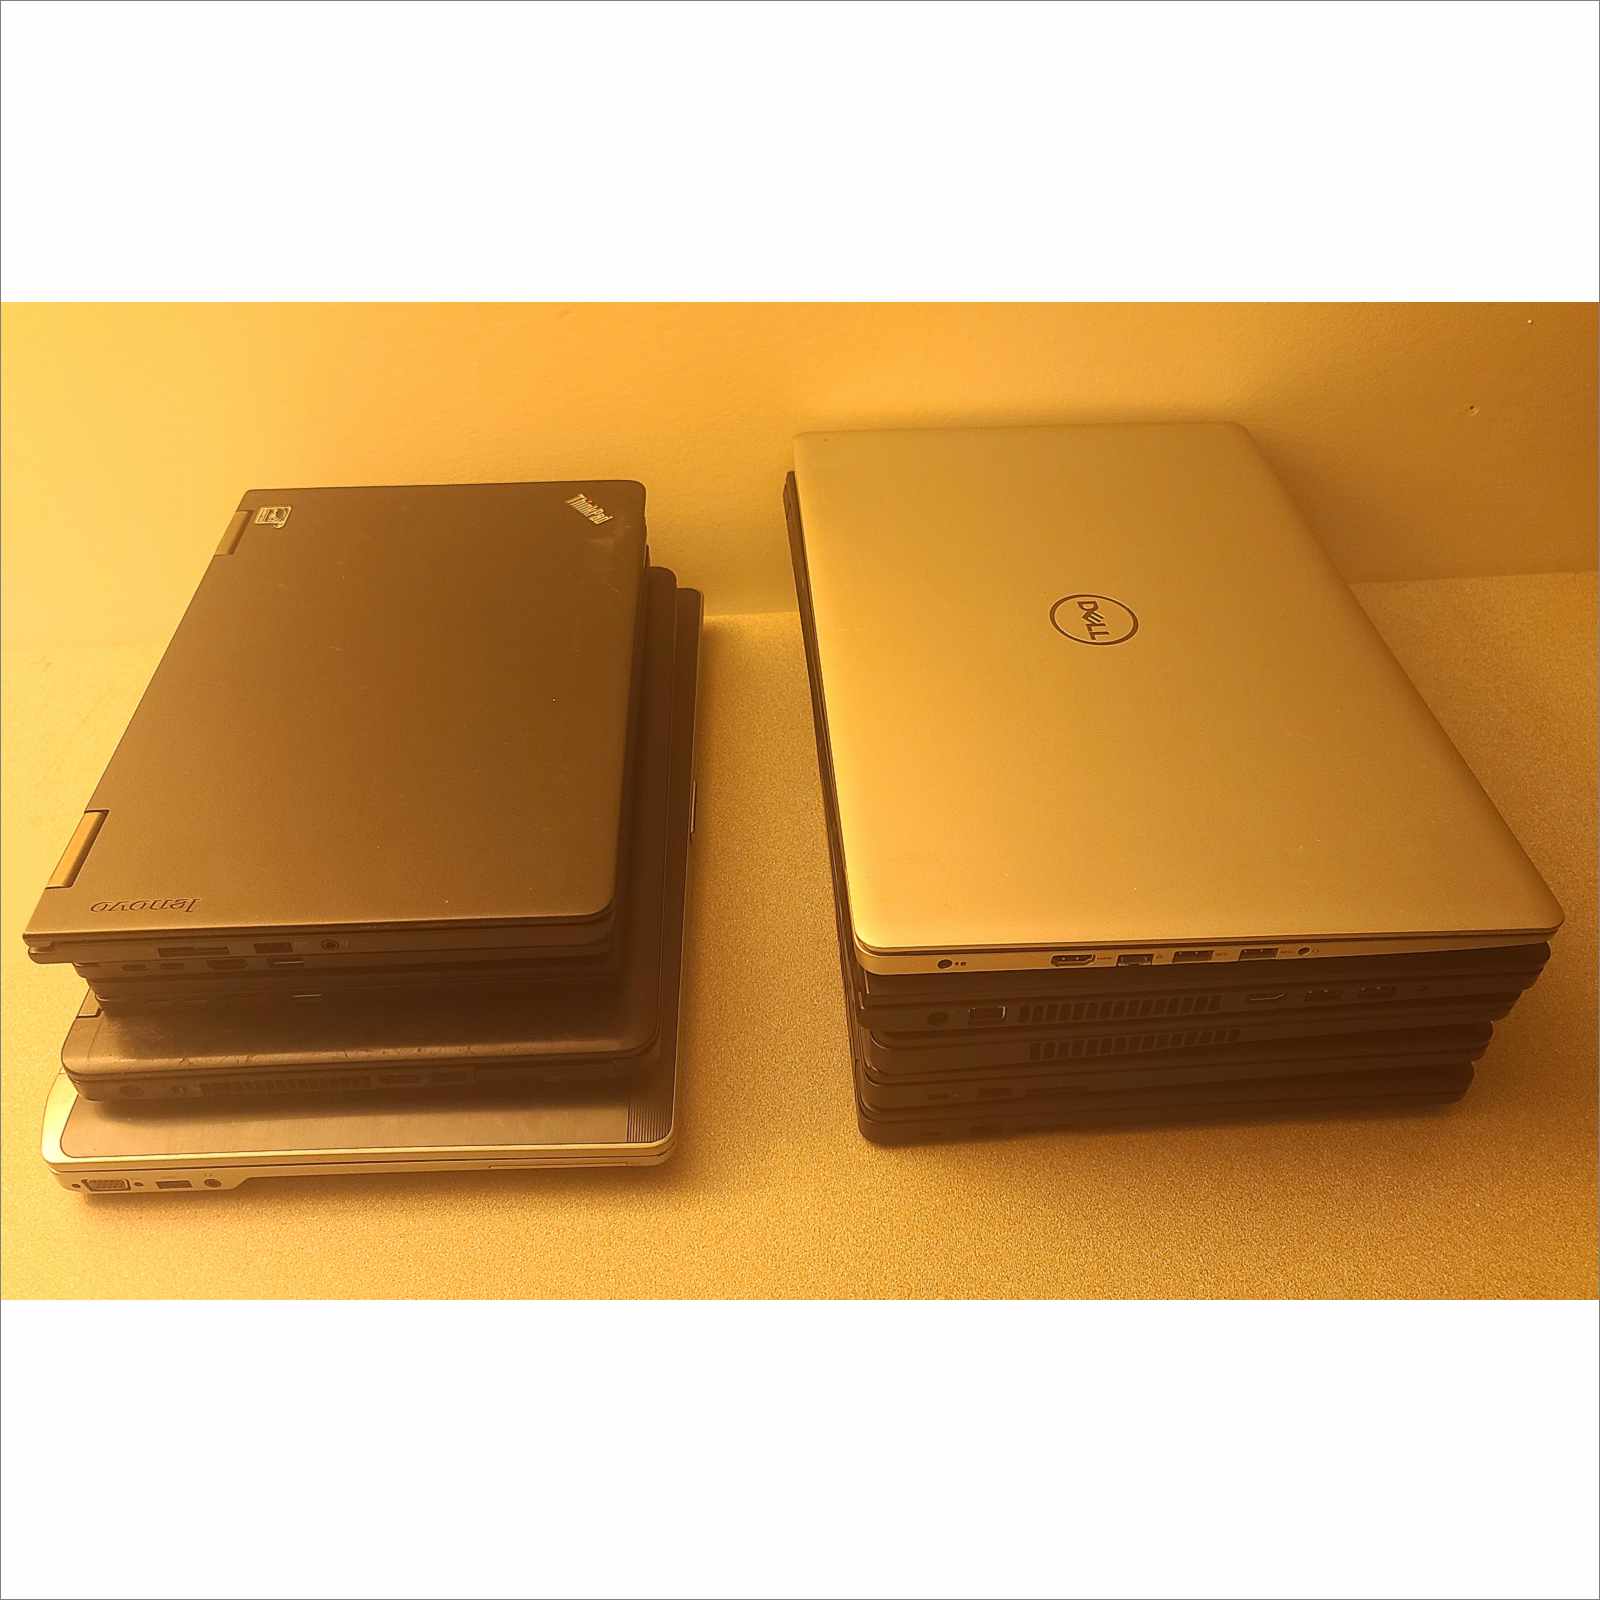  Dell Latitude 5590 Business Laptop, 15.6in HD, Intel Core 8th  Gen i5-8250U Quad Core, 8GB DDR4, 256GB SSD